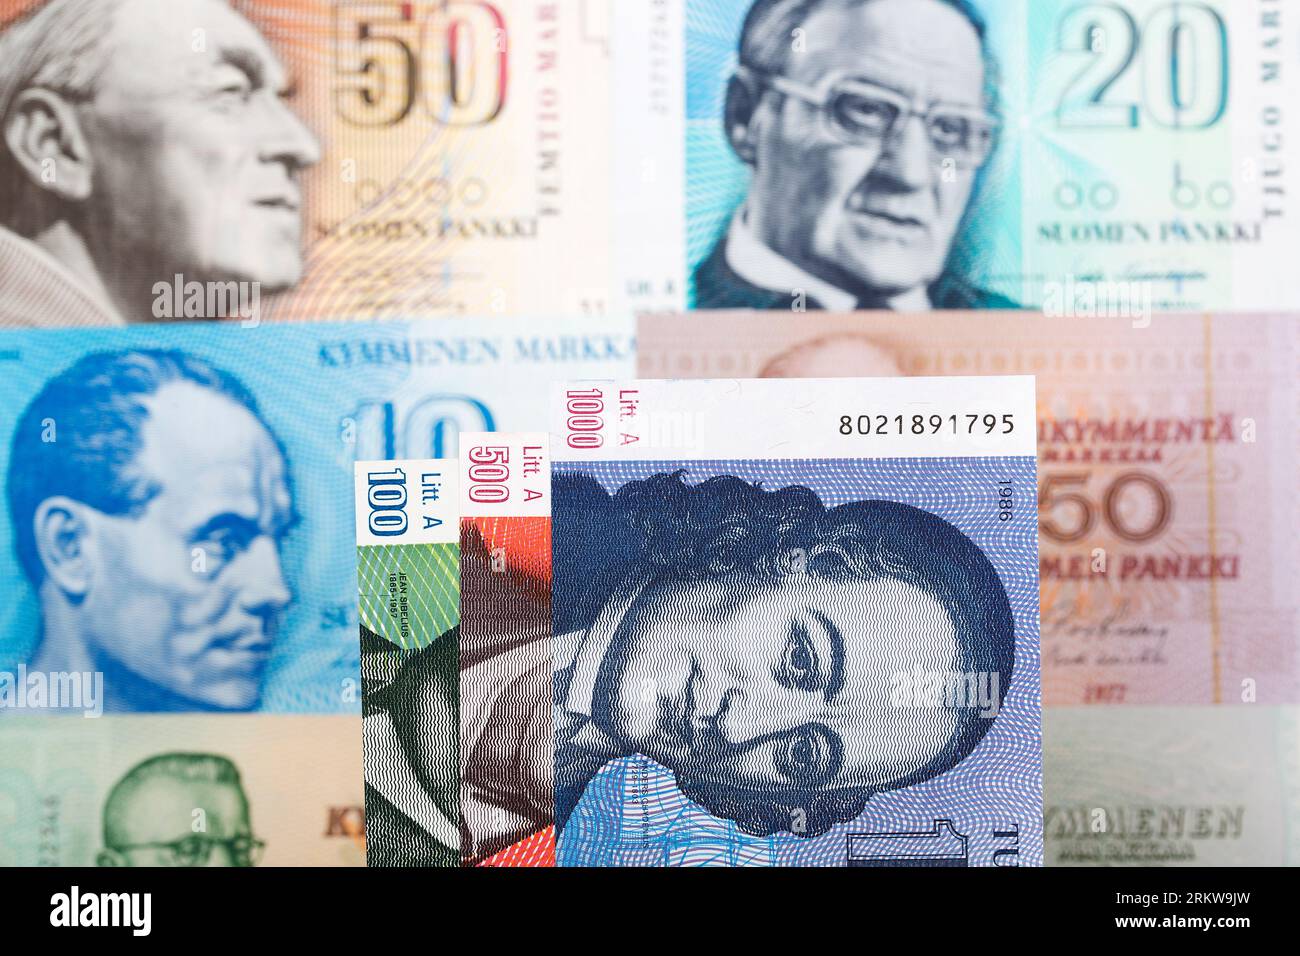 L'argent finlandais - markka une expérience d'affaires Banque D'Images